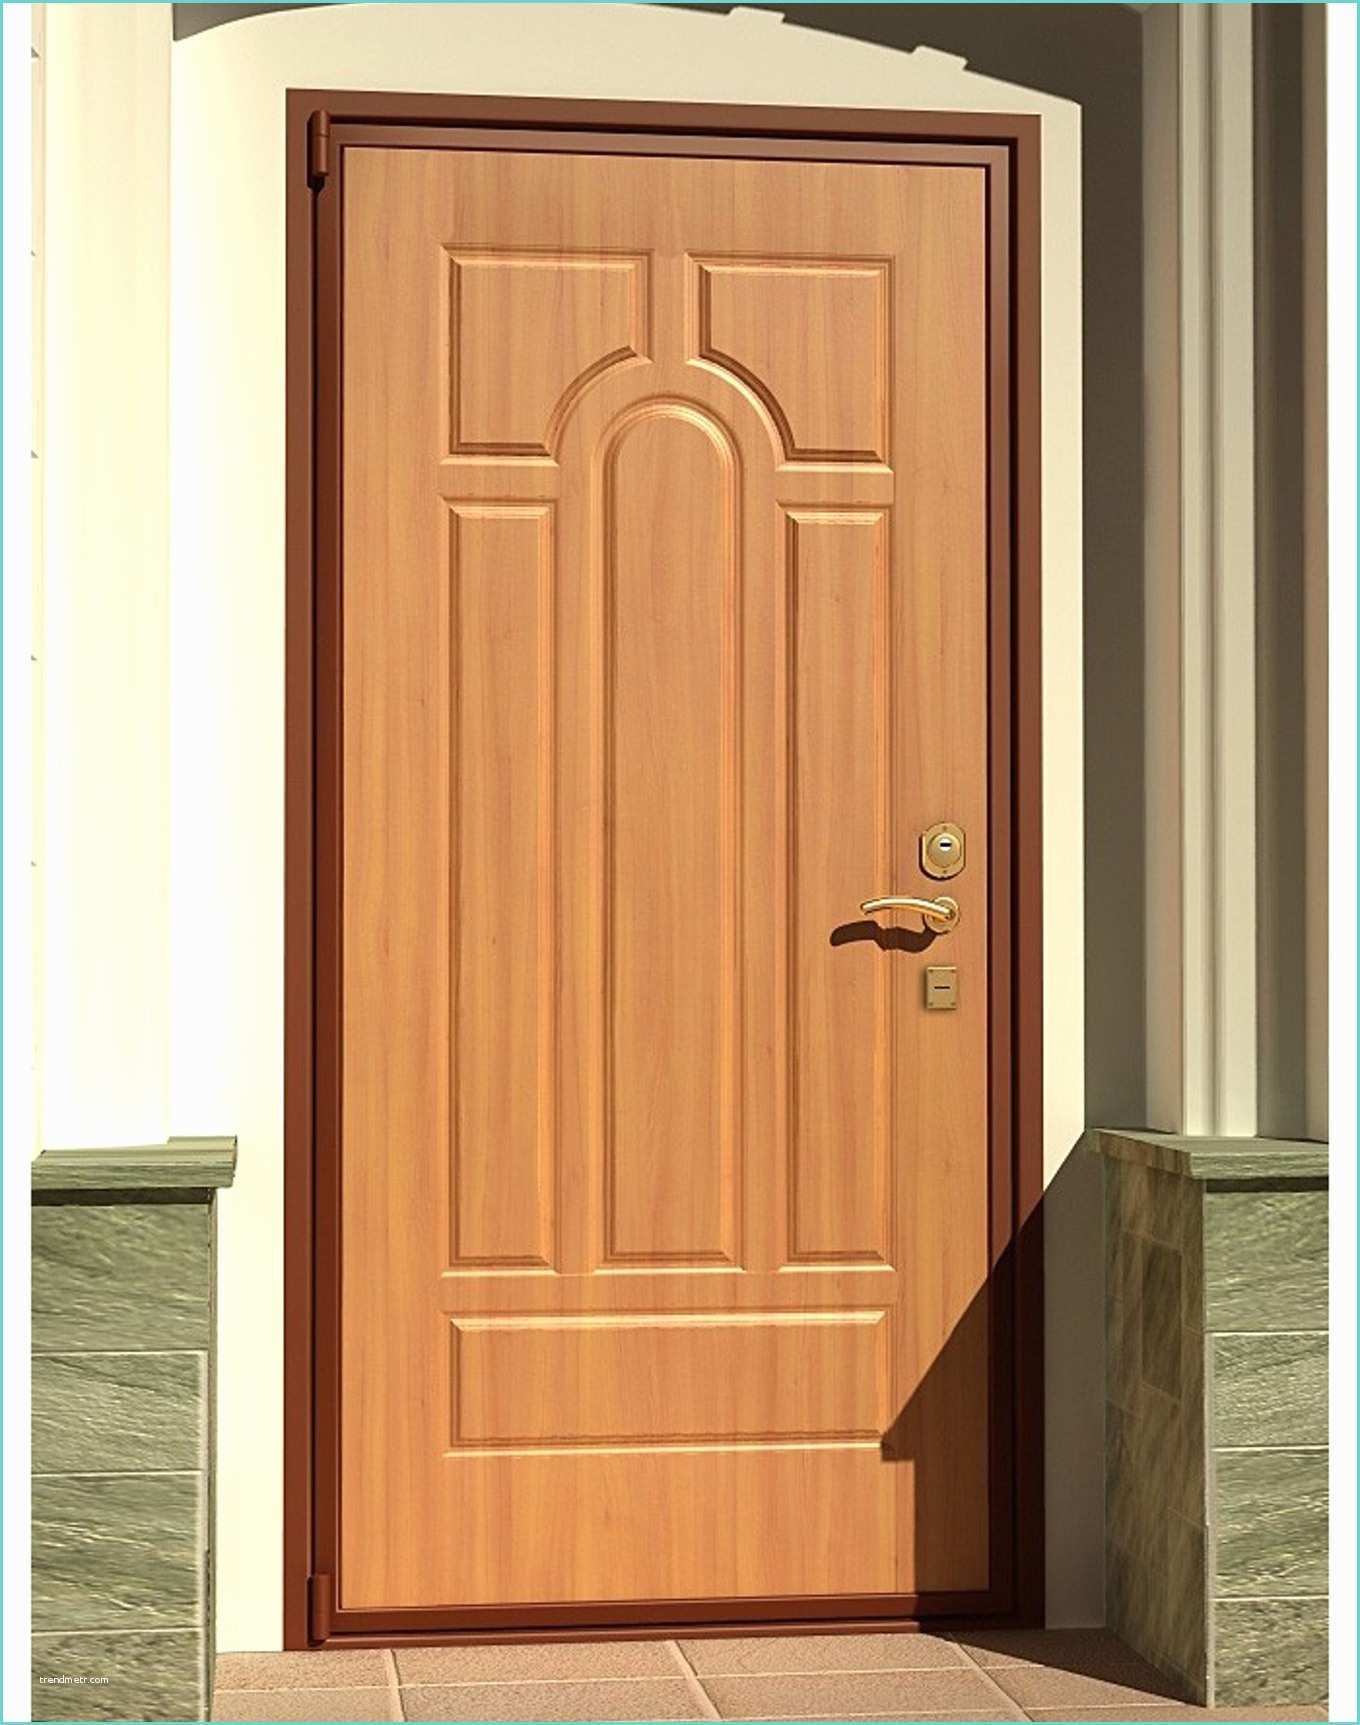 Мерлен железная дверь. Вход в дверь. Входная дверь. Красивые входные двери в квартиру. Входные деревянные двери в квартиру.